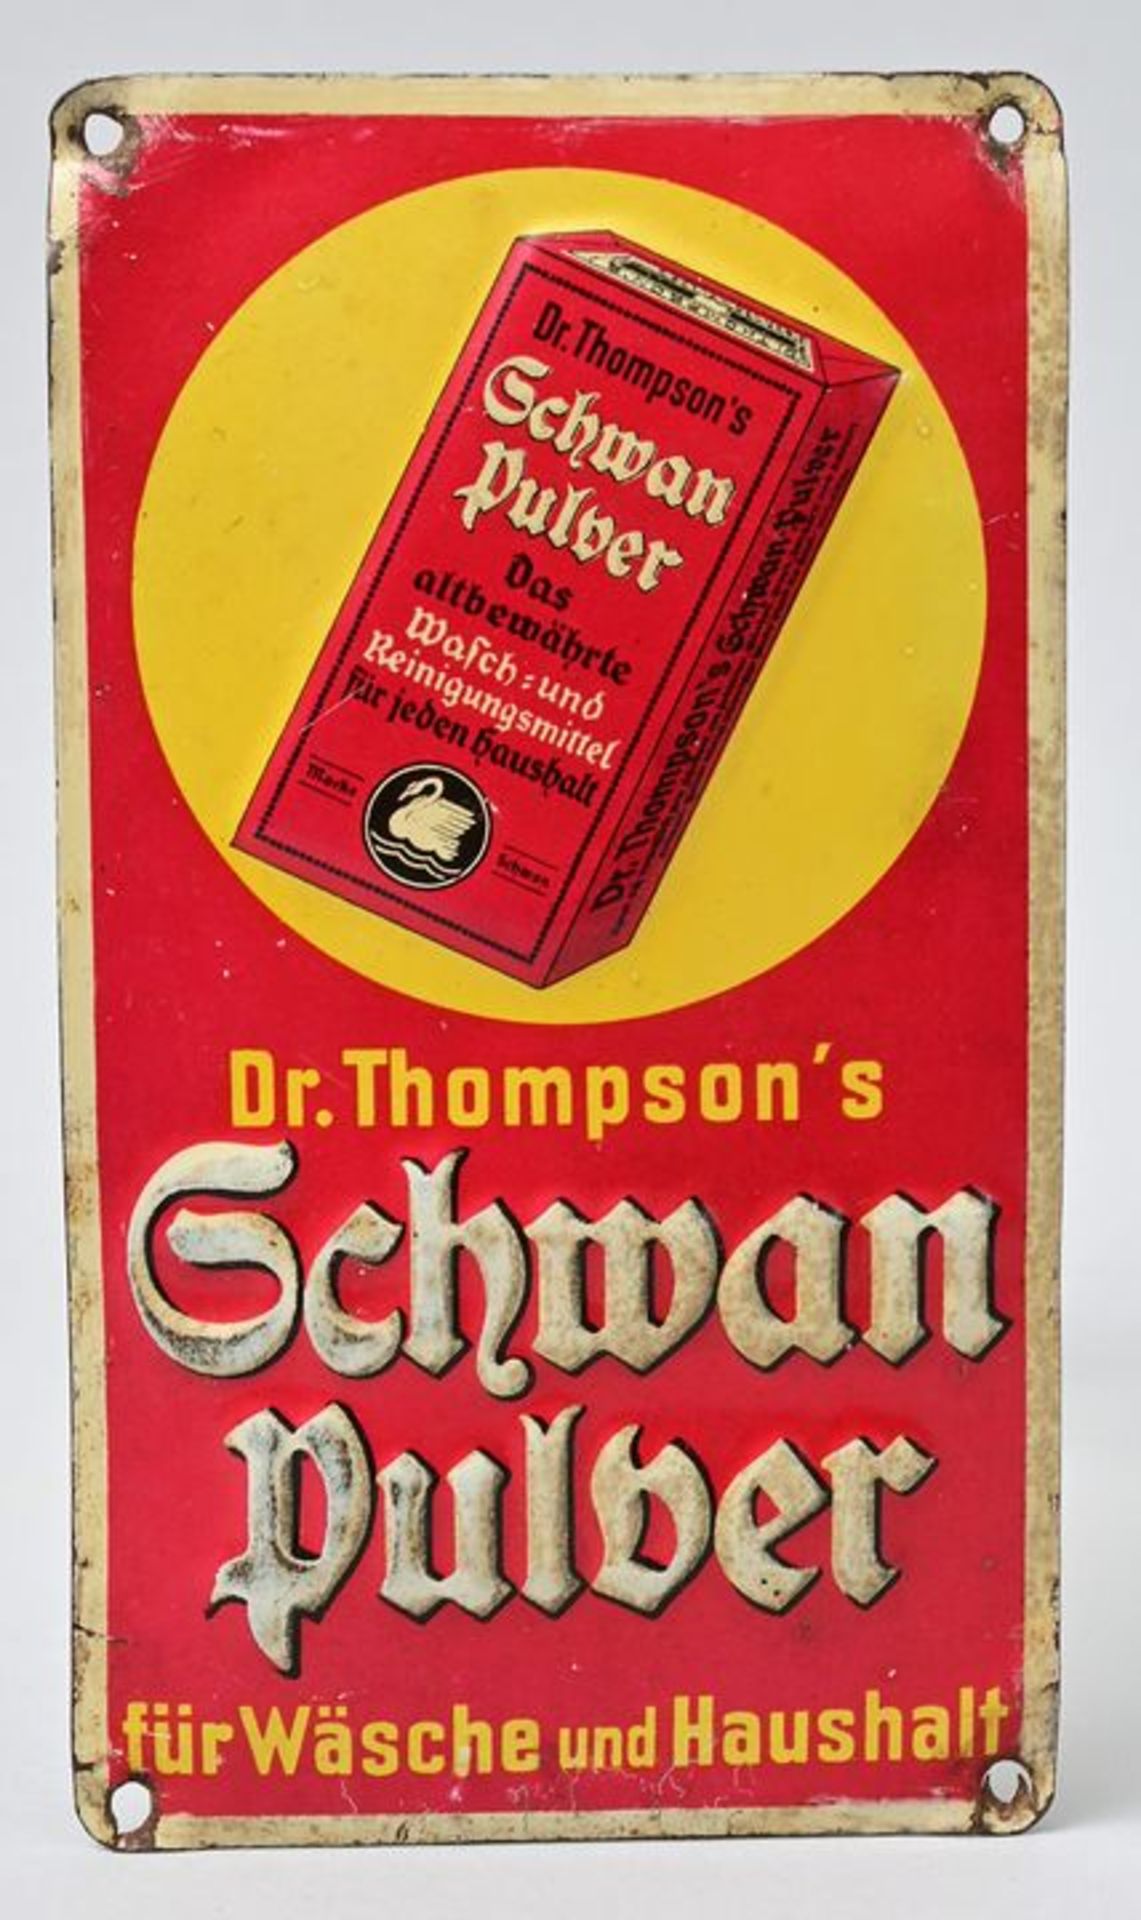 Blechschild "Dr. ThompsonÂ´s Schwanpulver" / sign